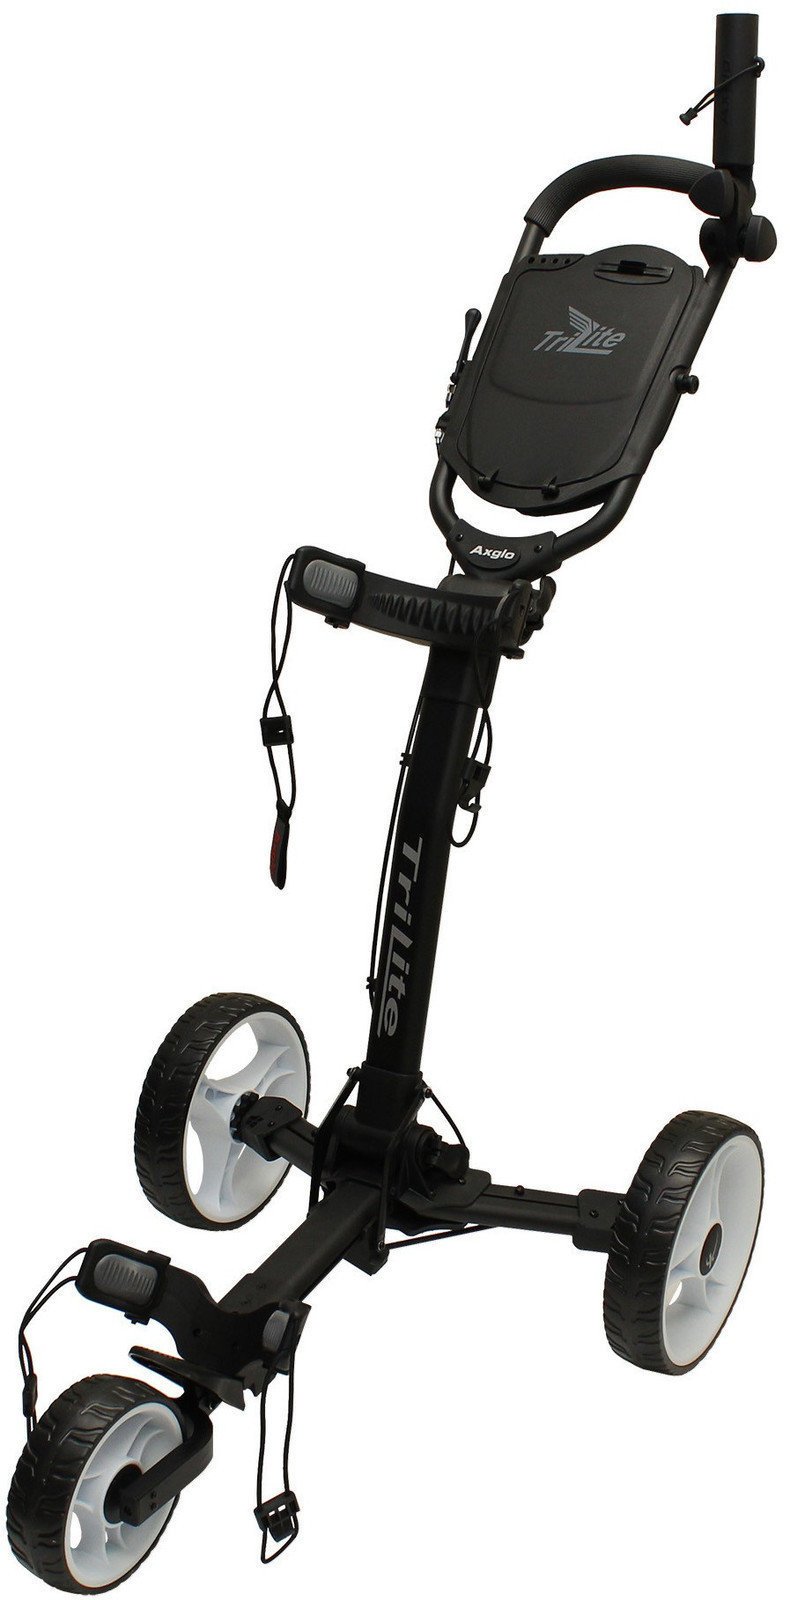 Manuálny golfový vozík Axglo TriLite Black/White Manuálny golfový vozík